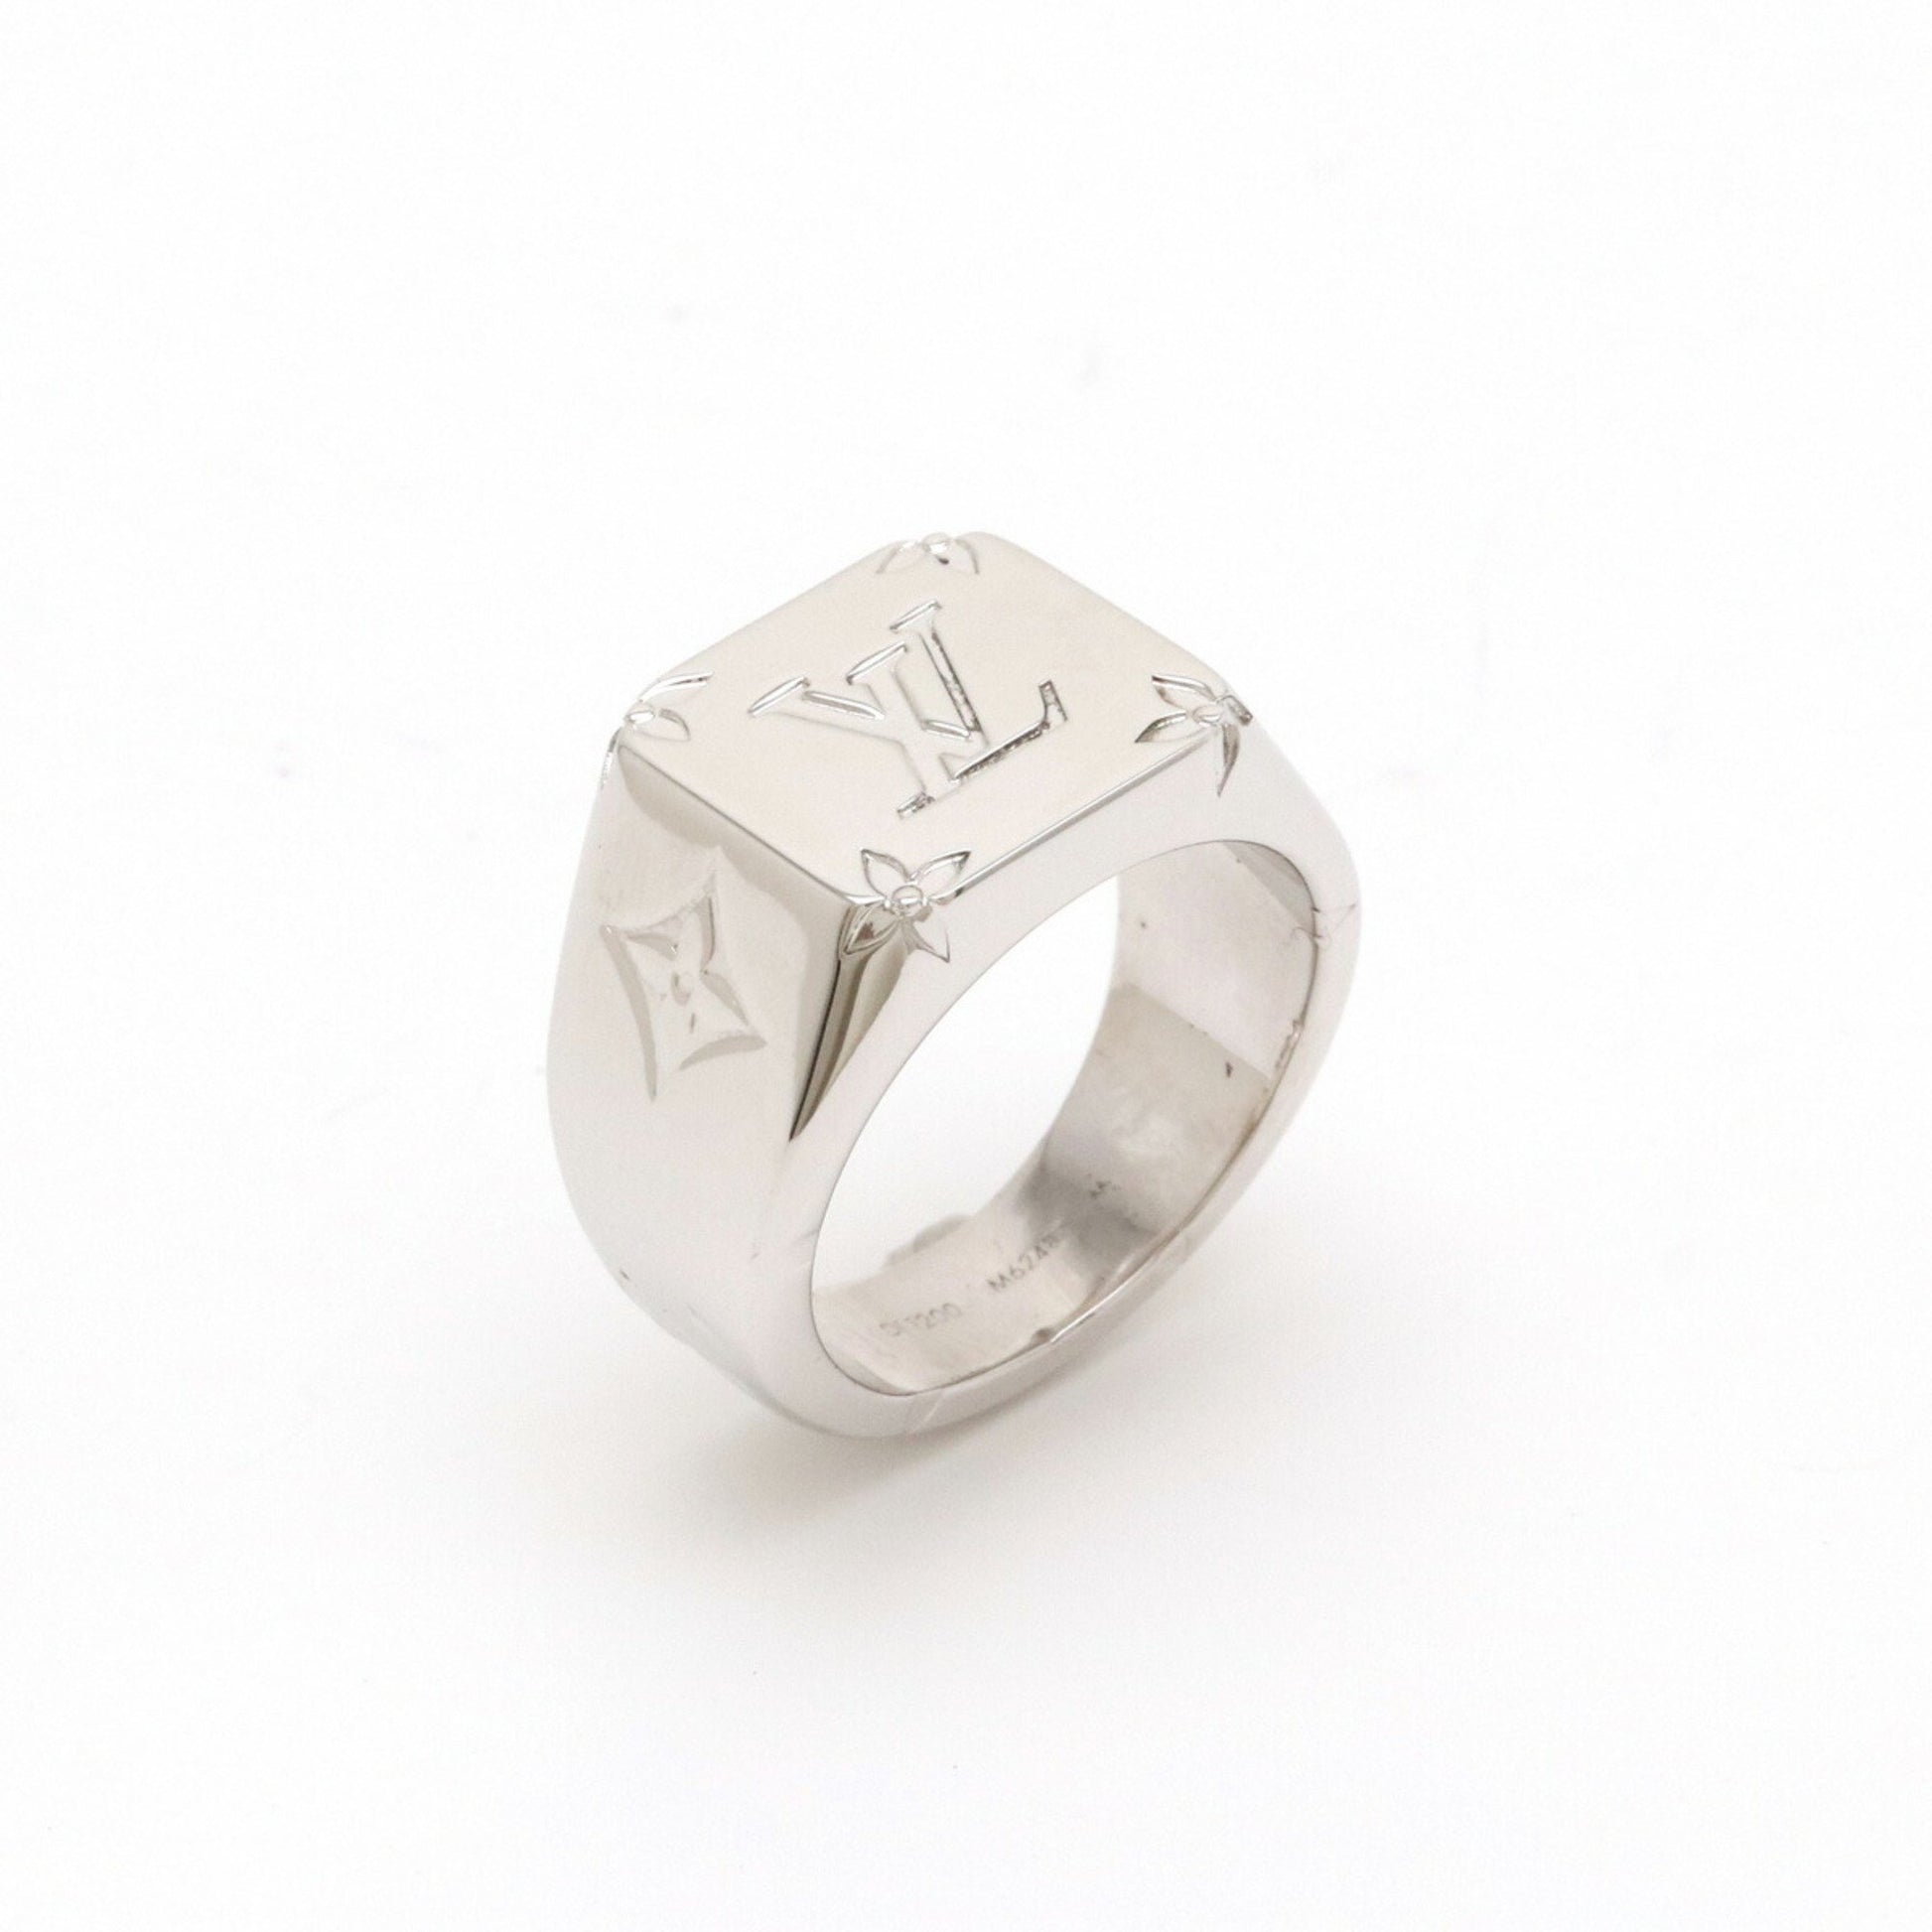 Louis Vuitton Signet Ring Metal Silver 16664839